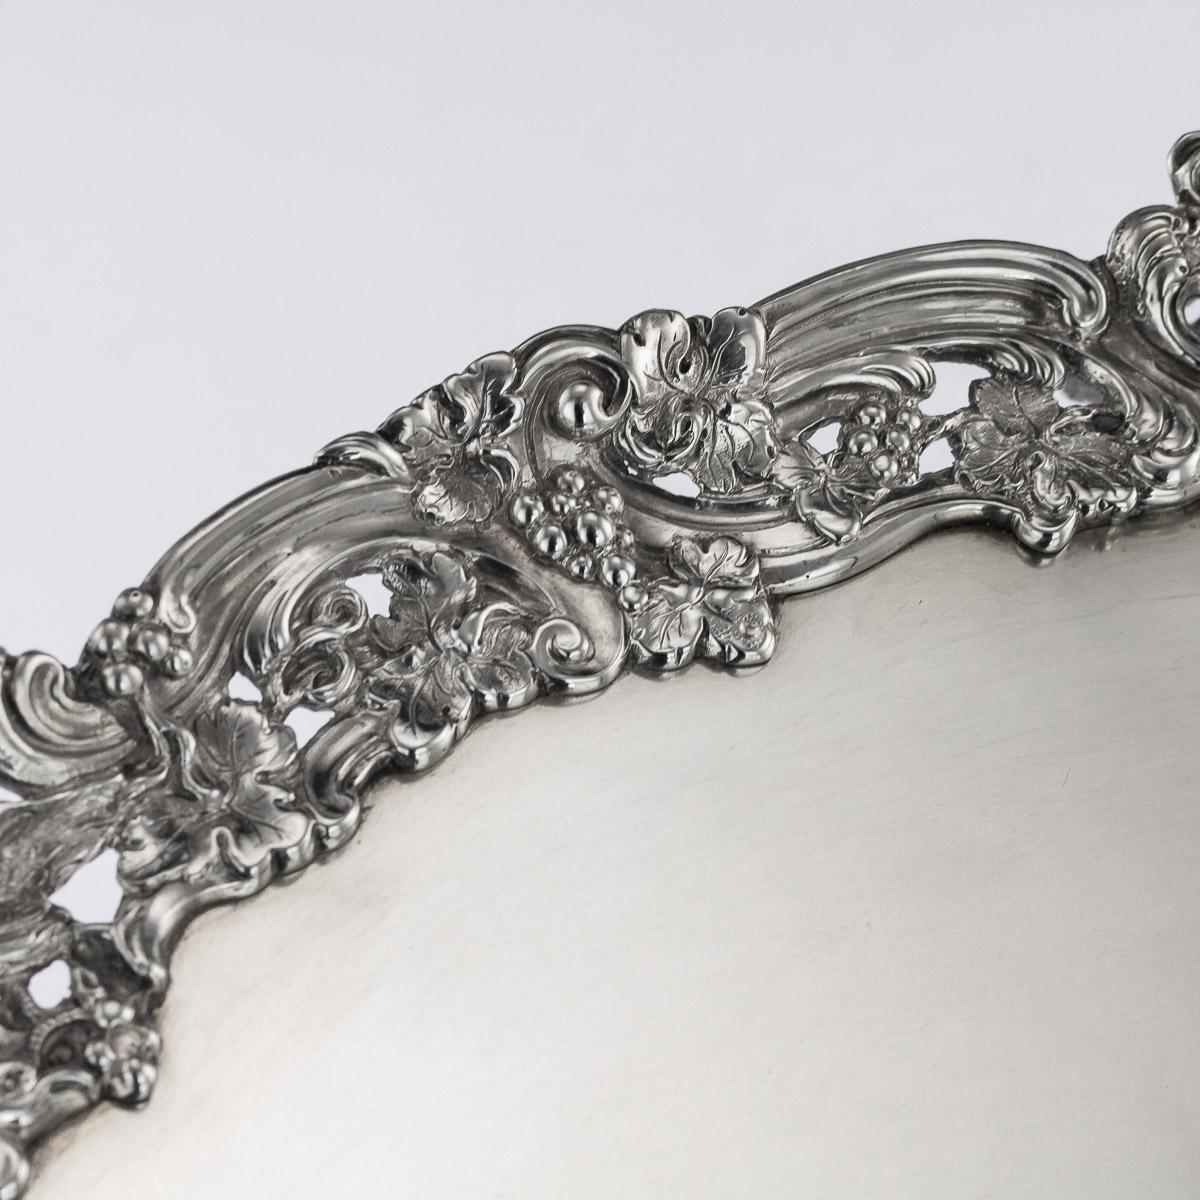 18th Century Georgian Solid Silver Salver Tray, Arthur Annesley, circa 1760 (18. Jahrhundert und früher)